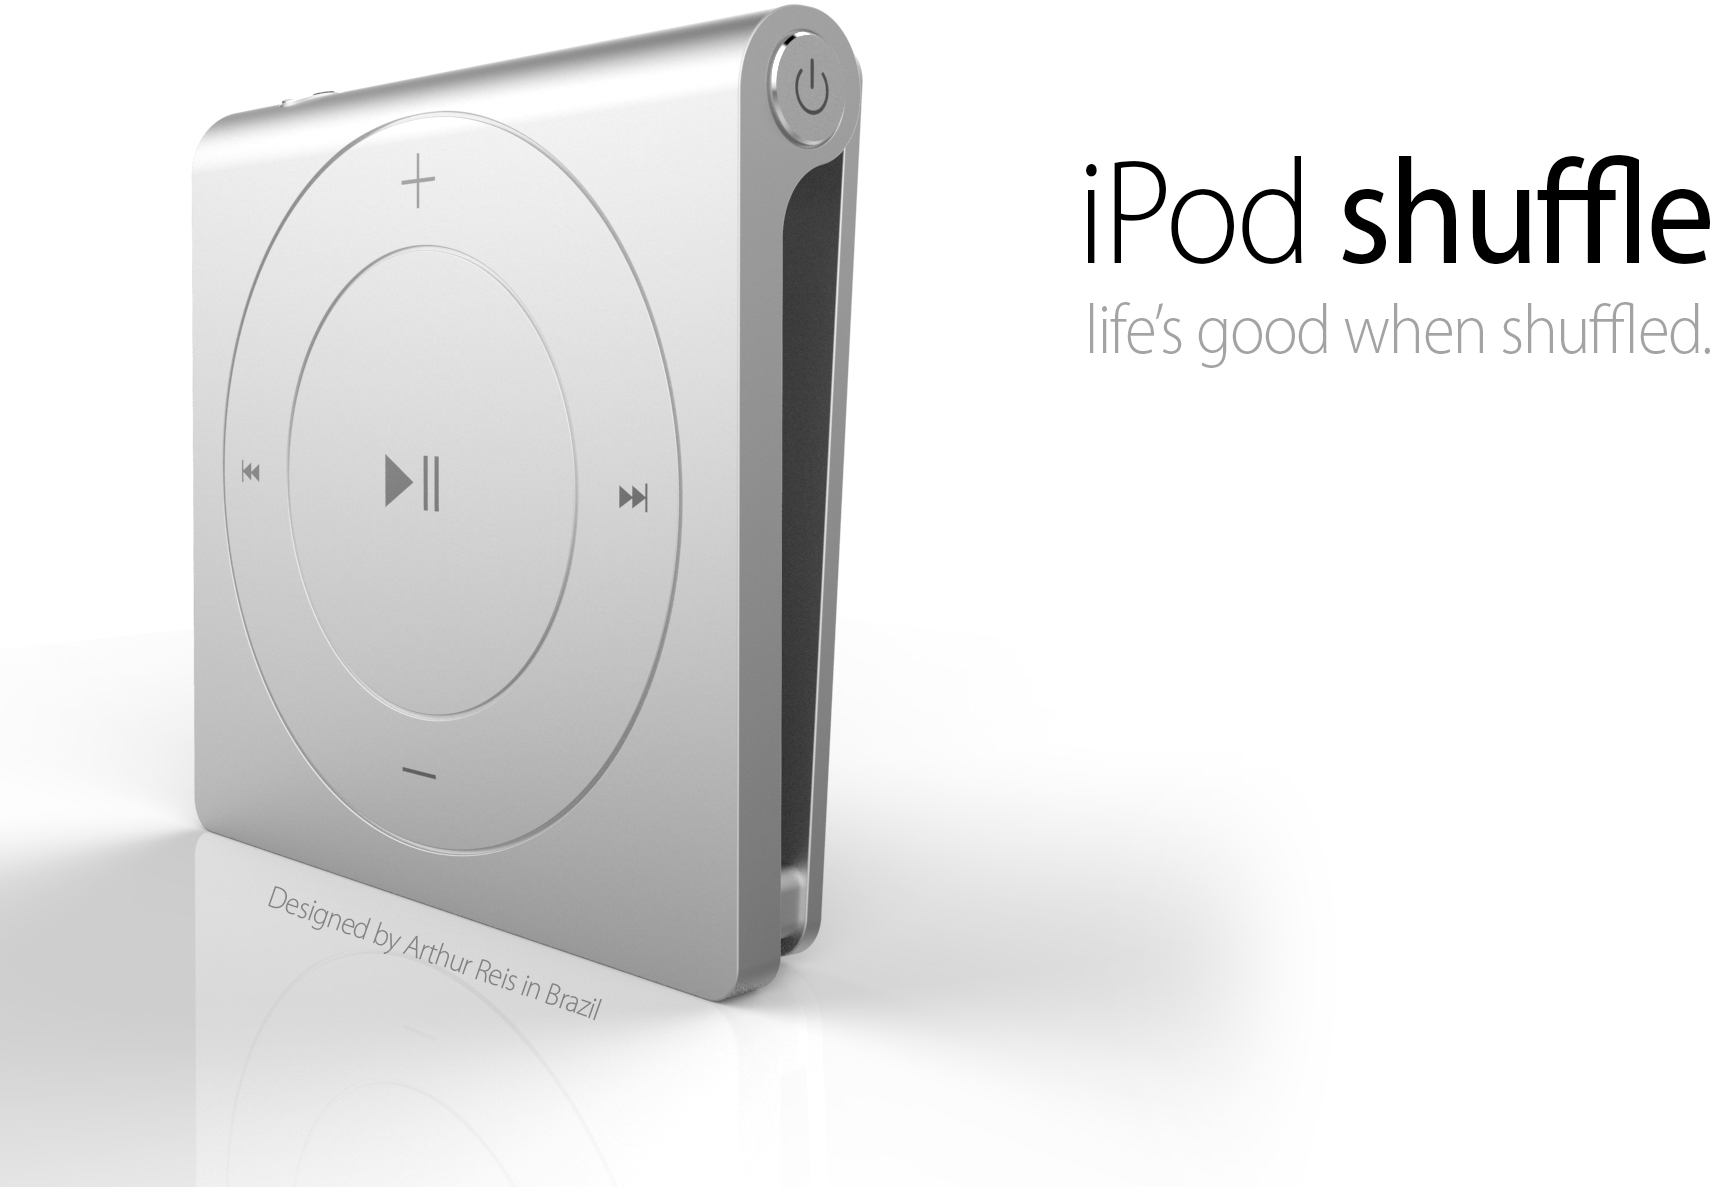 Conceito de novo iPod shuffle